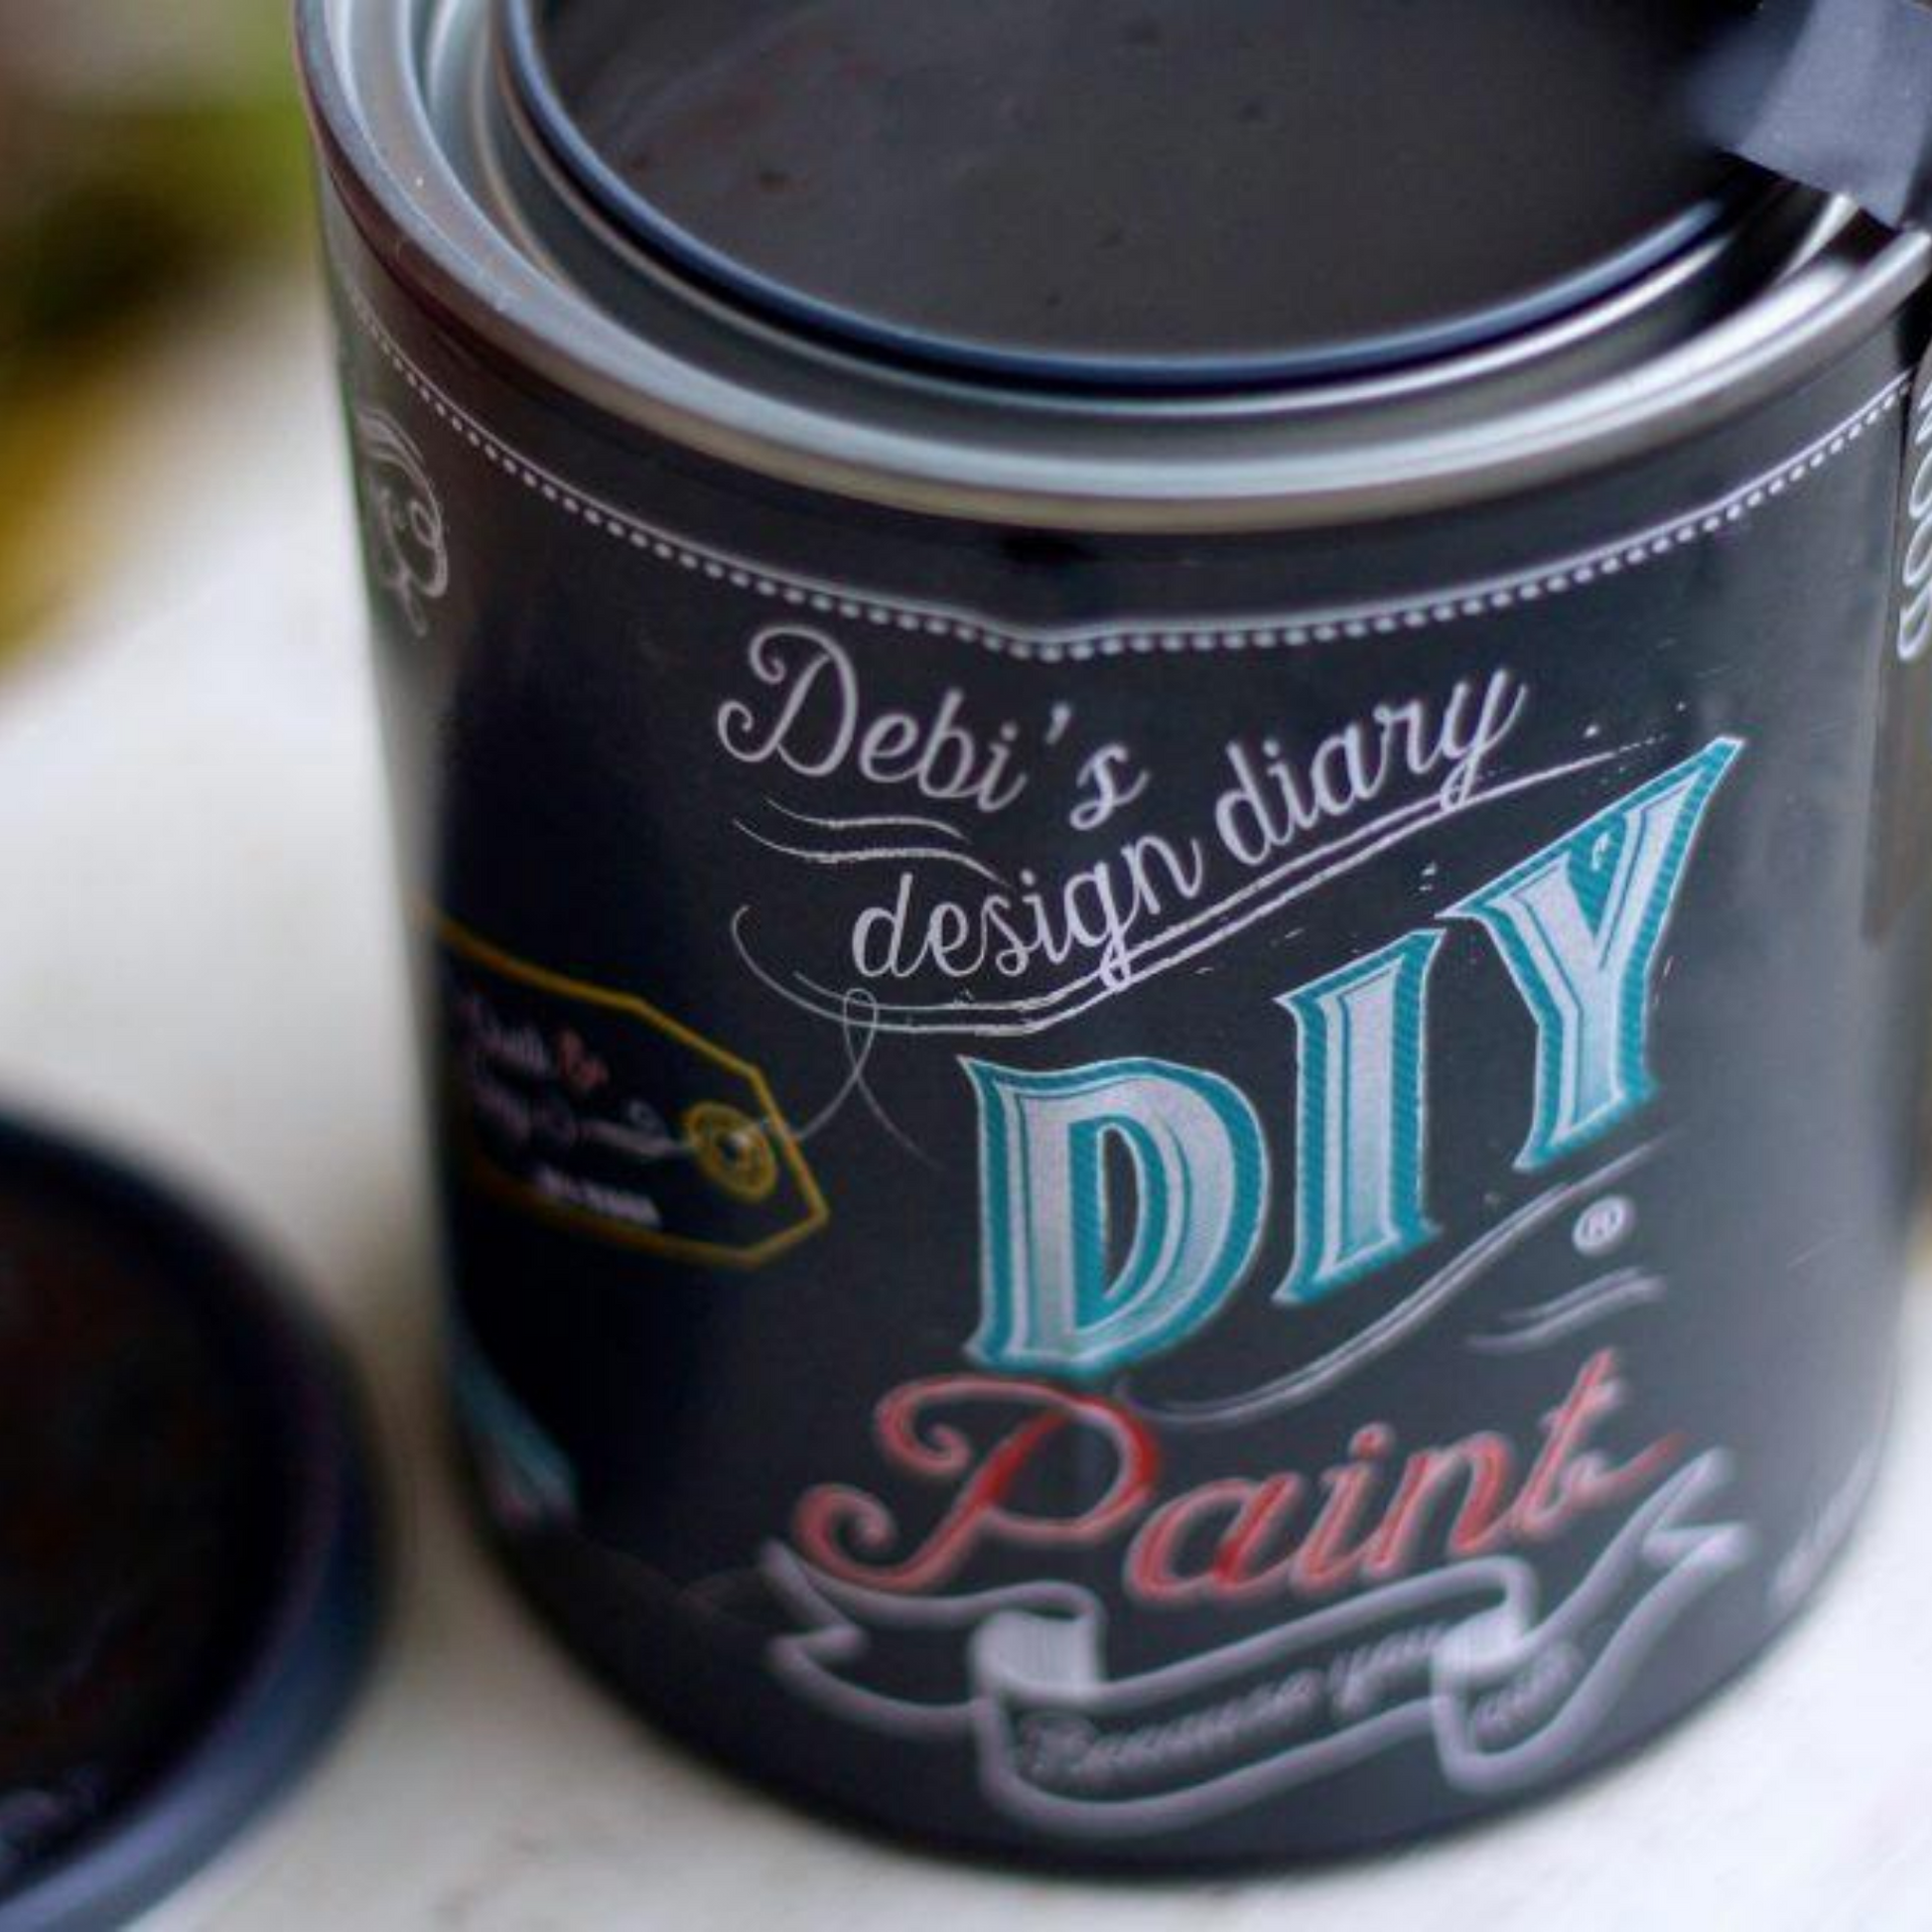 Debi's Design Diary DIY Paint in Weathered Wood (brown-gray) at Milton's Daughter